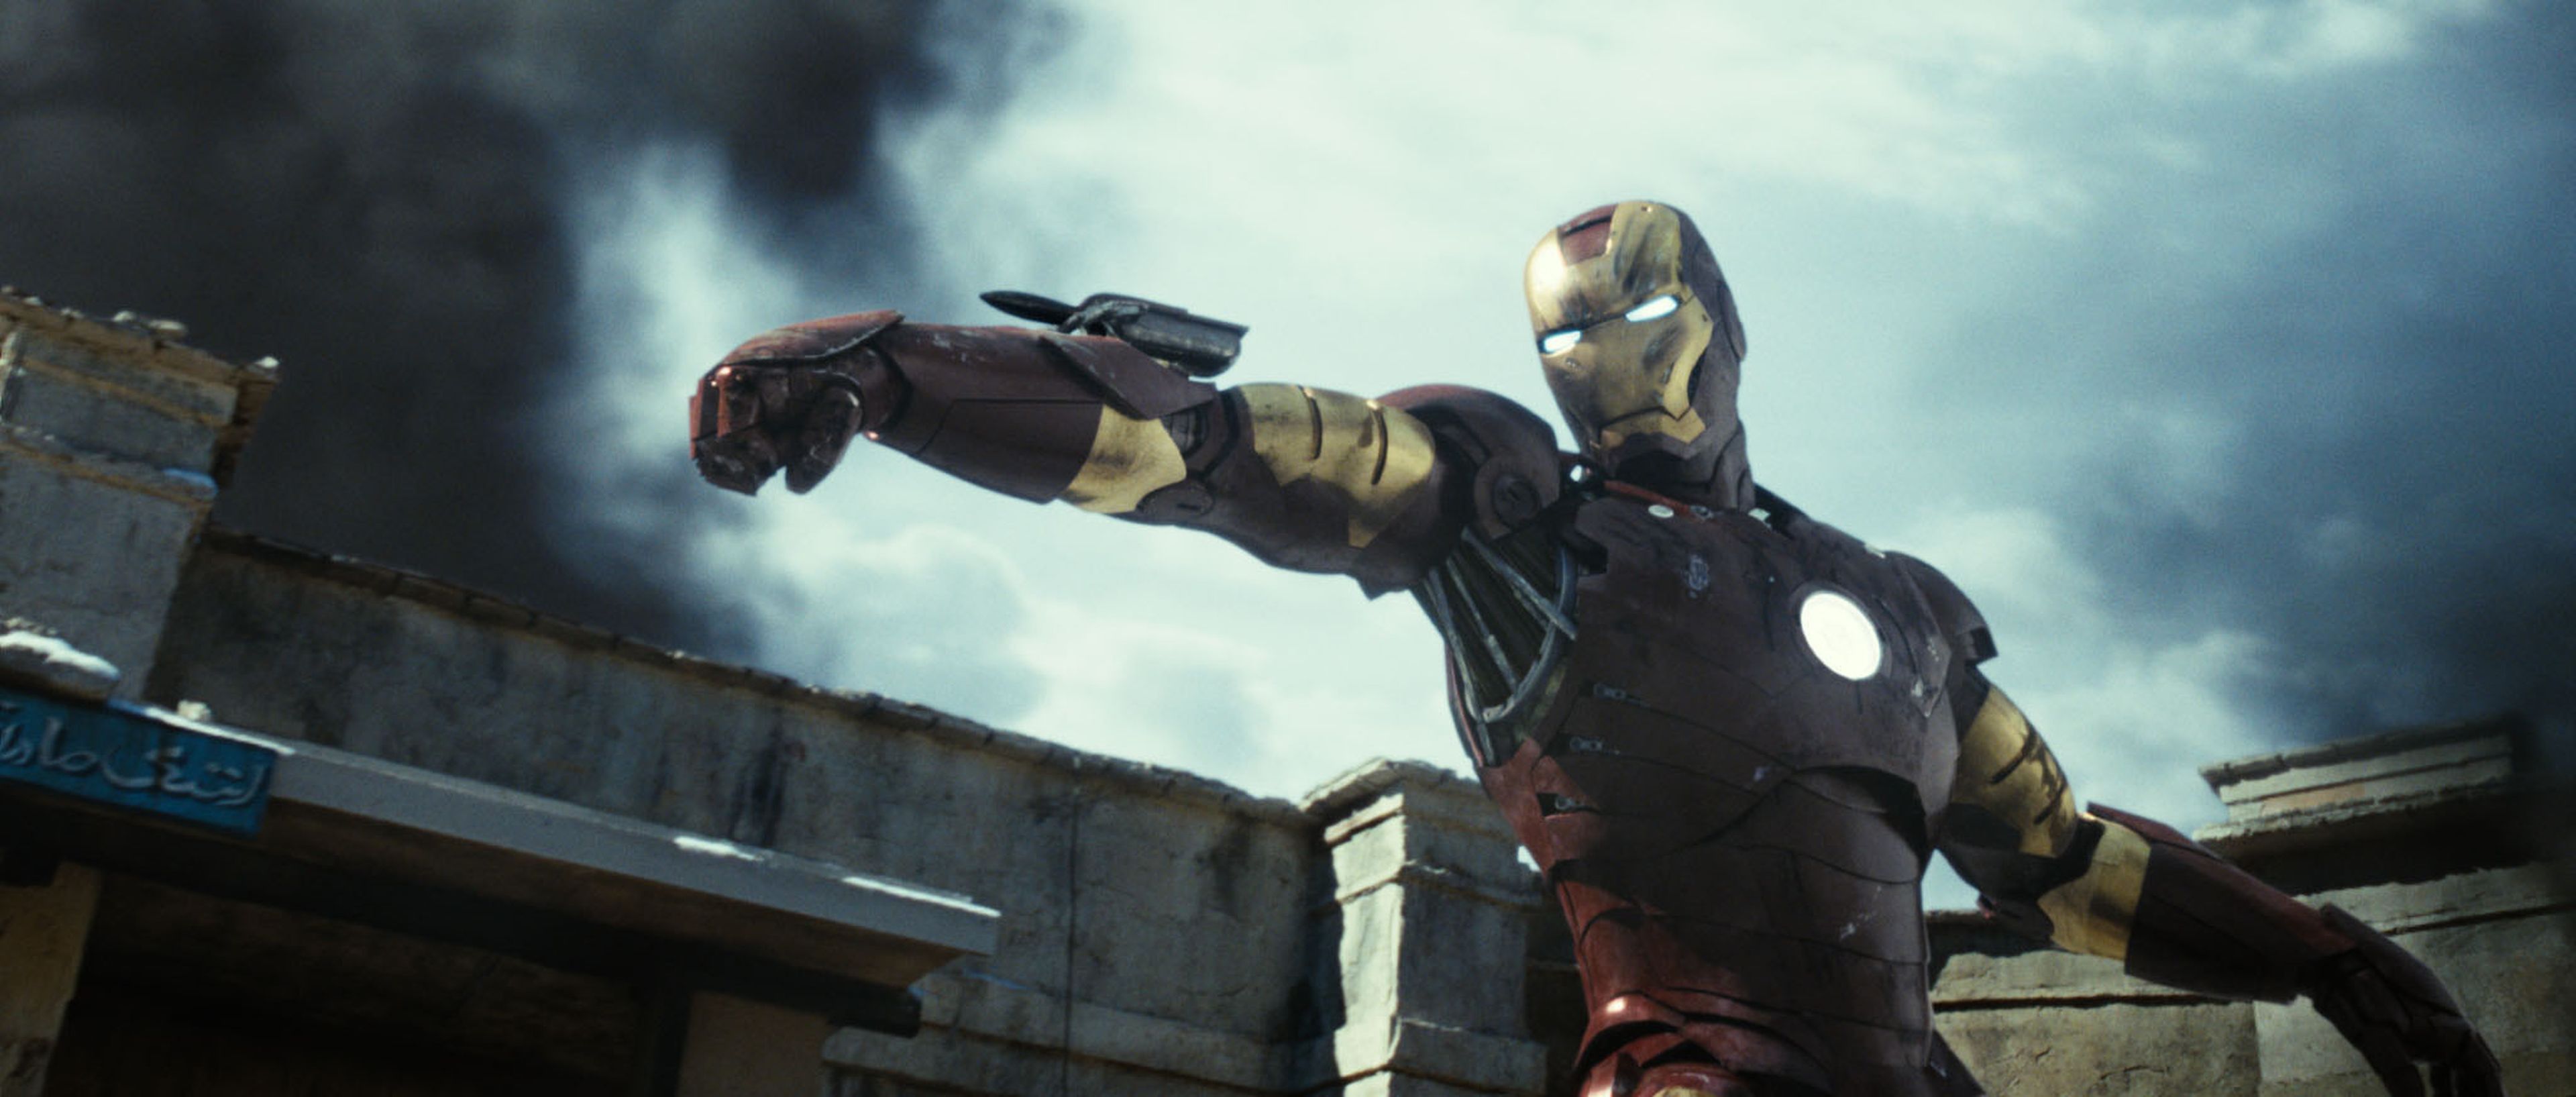 Iron Man Mark III - Iron Man (2008)